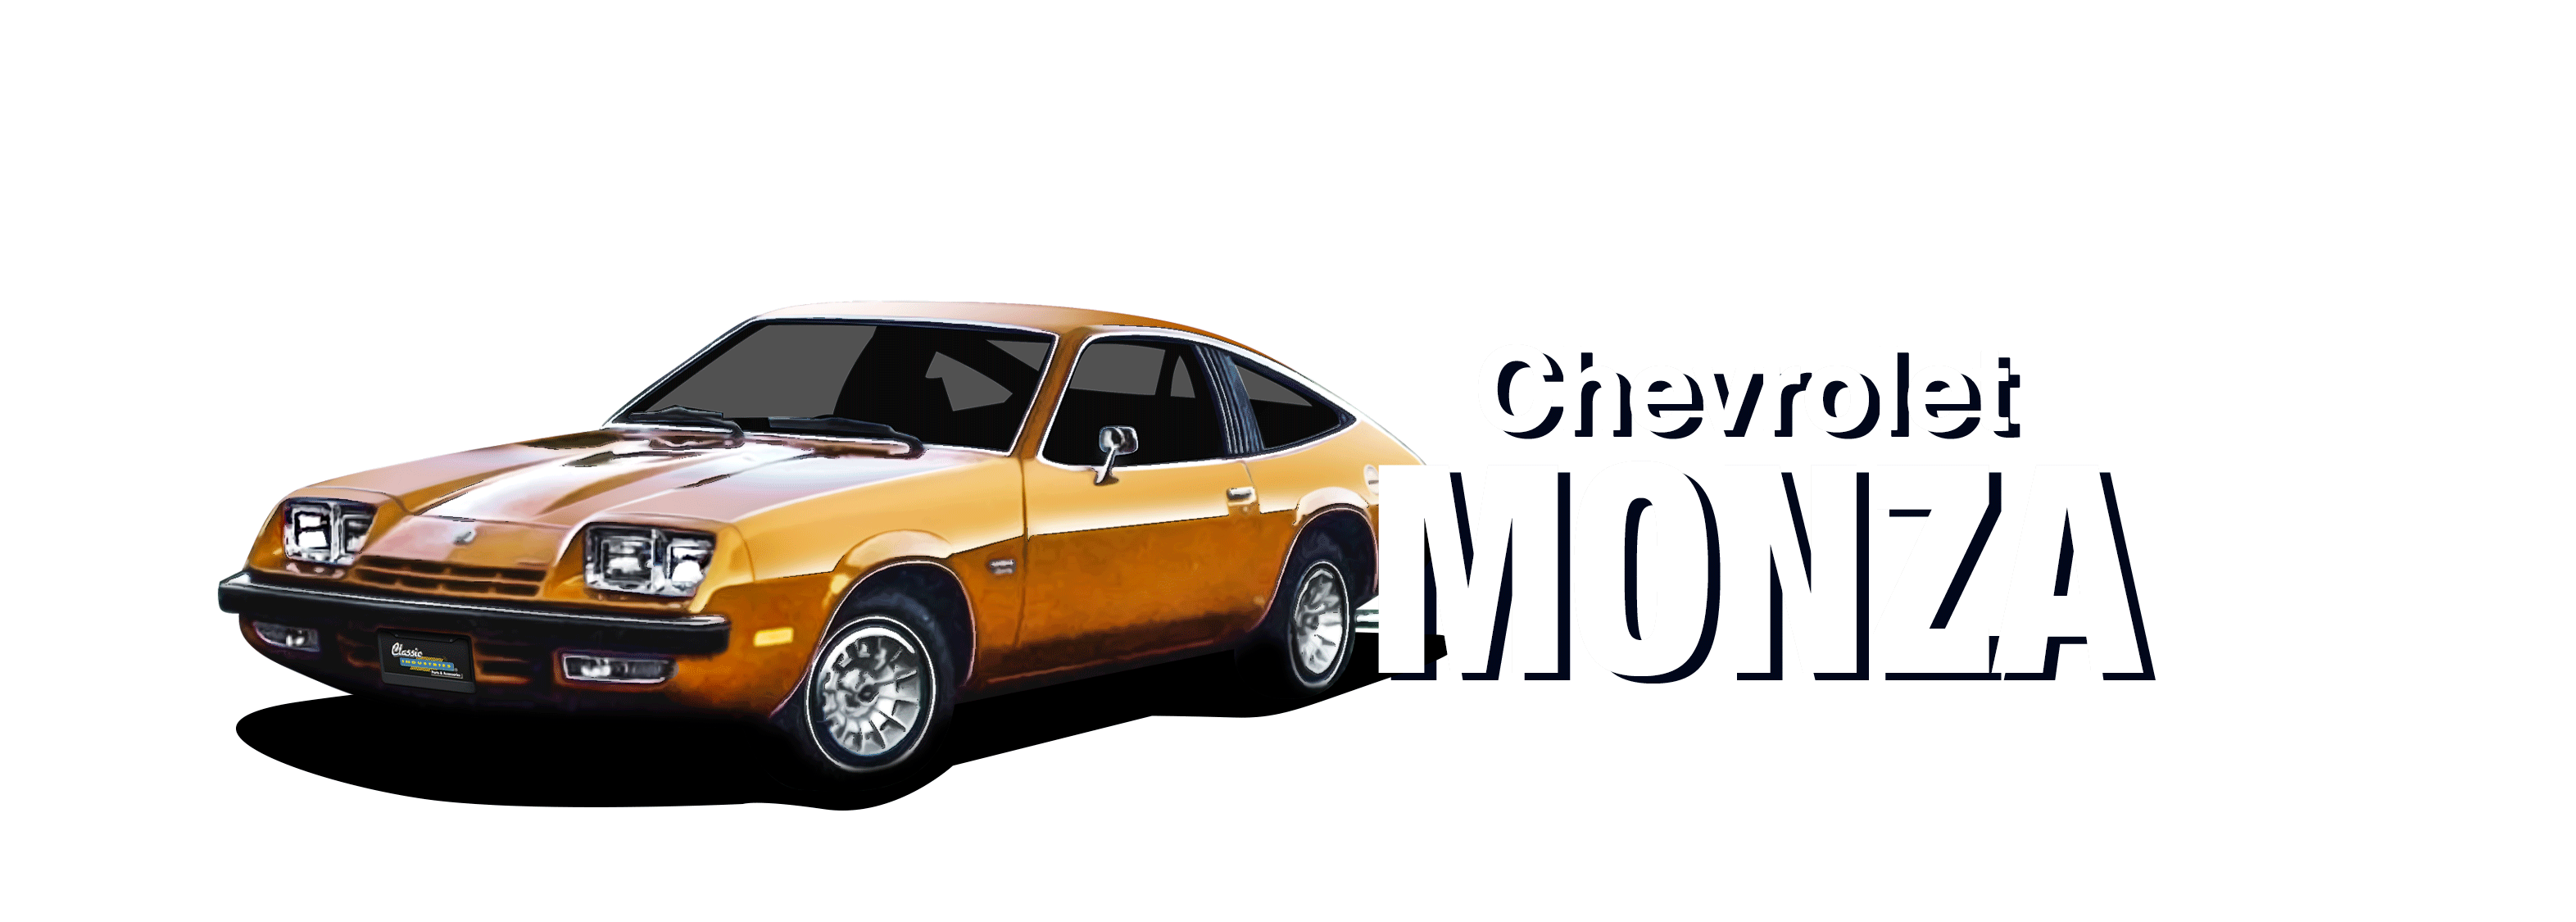 Chevrolet-Monza-vehicle-desktop